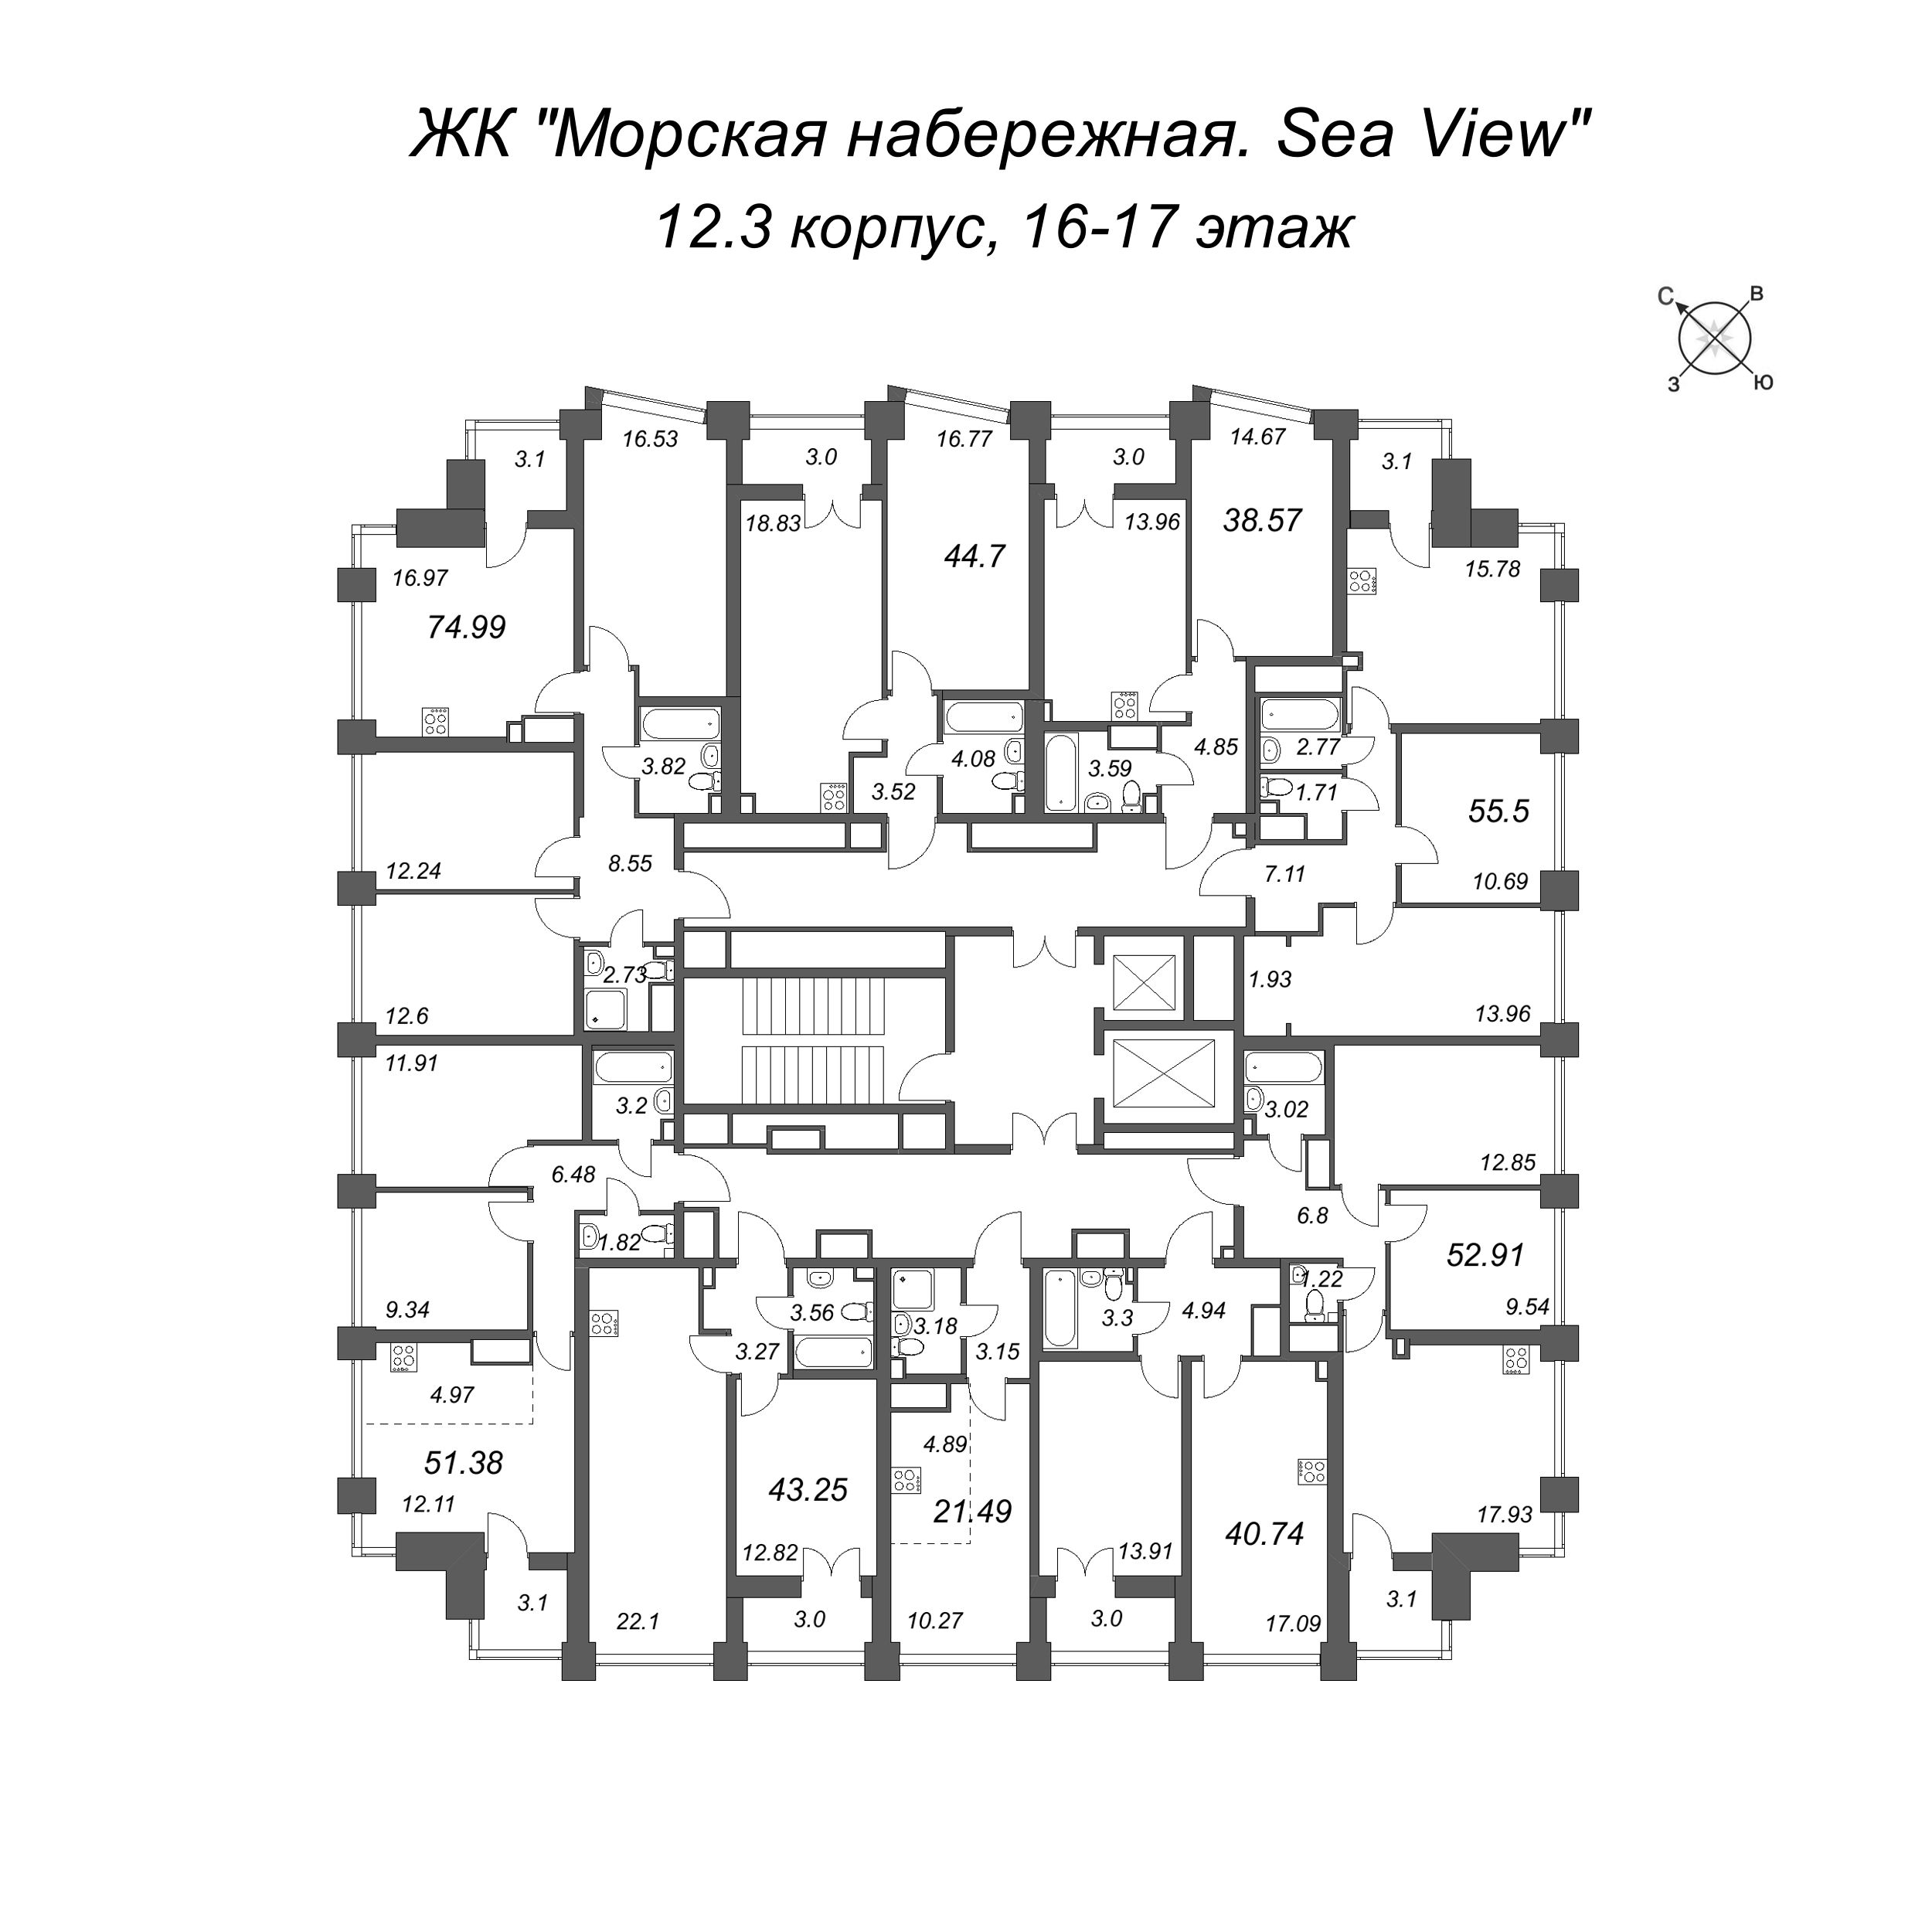 1-комнатная квартира, 38.57 м² в ЖК "Морская набережная. SeaView" - планировка этажа